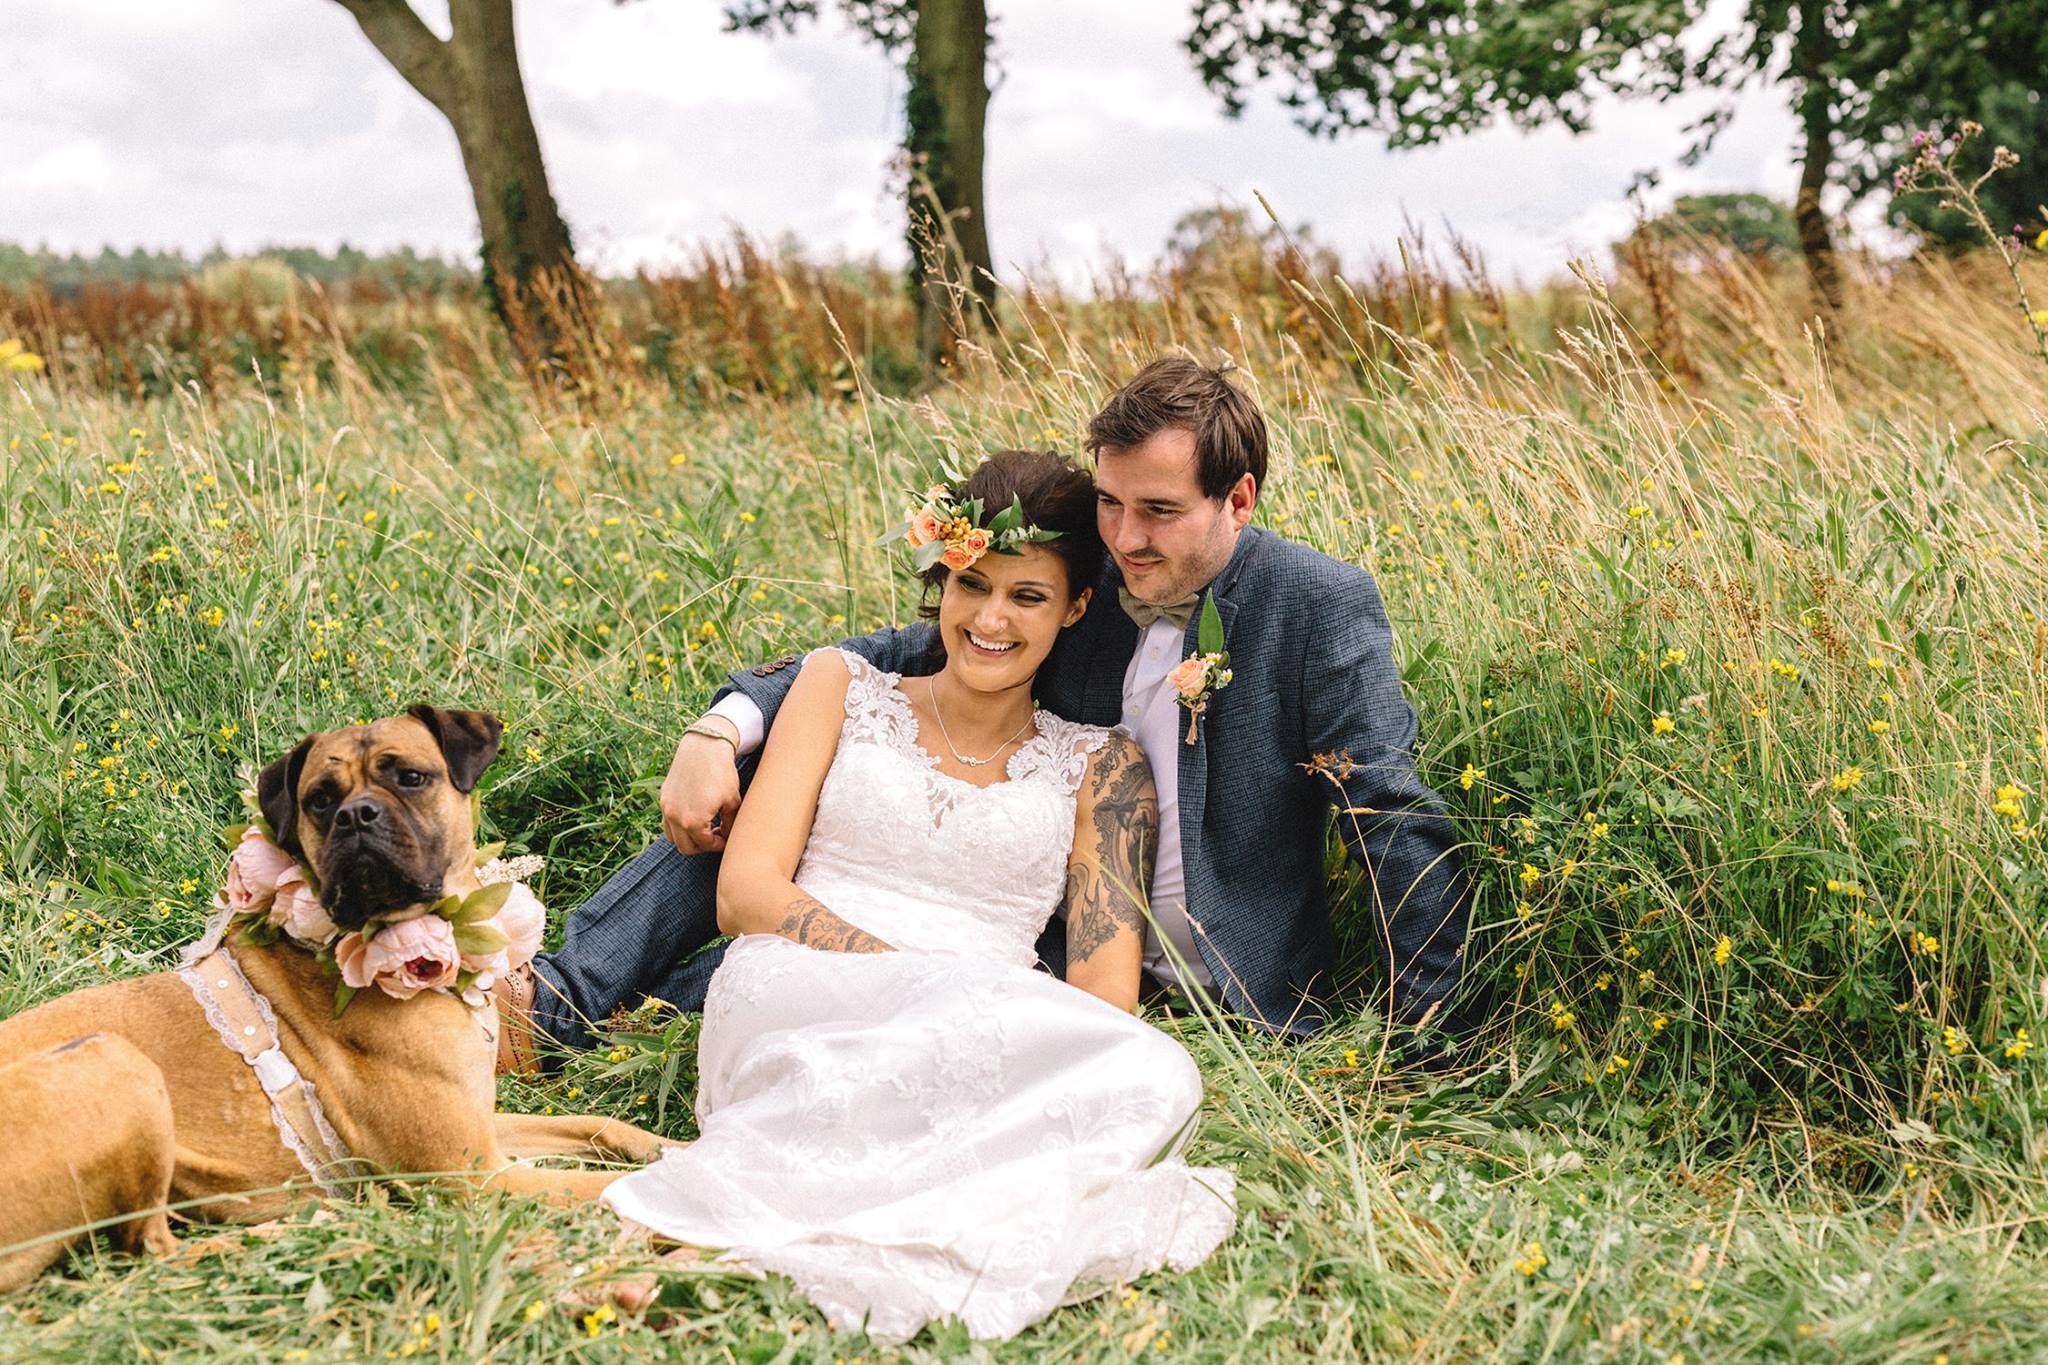 Dog at a wedding - top image